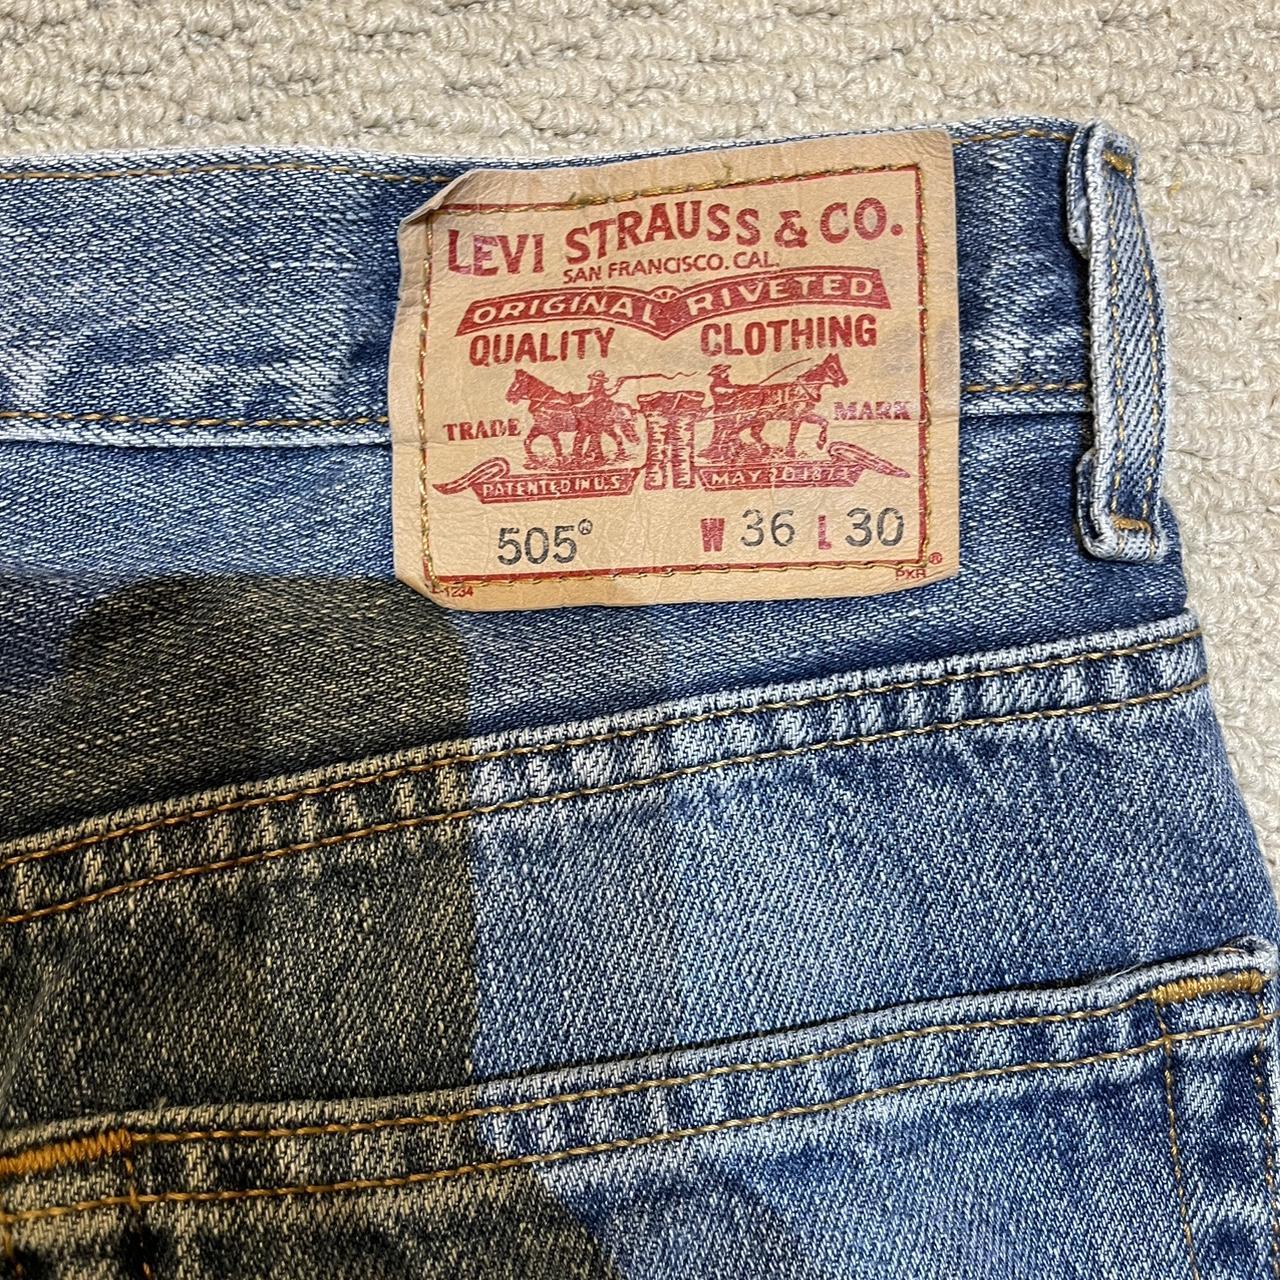 Levi’s Vintage jeans little bit washed - Depop